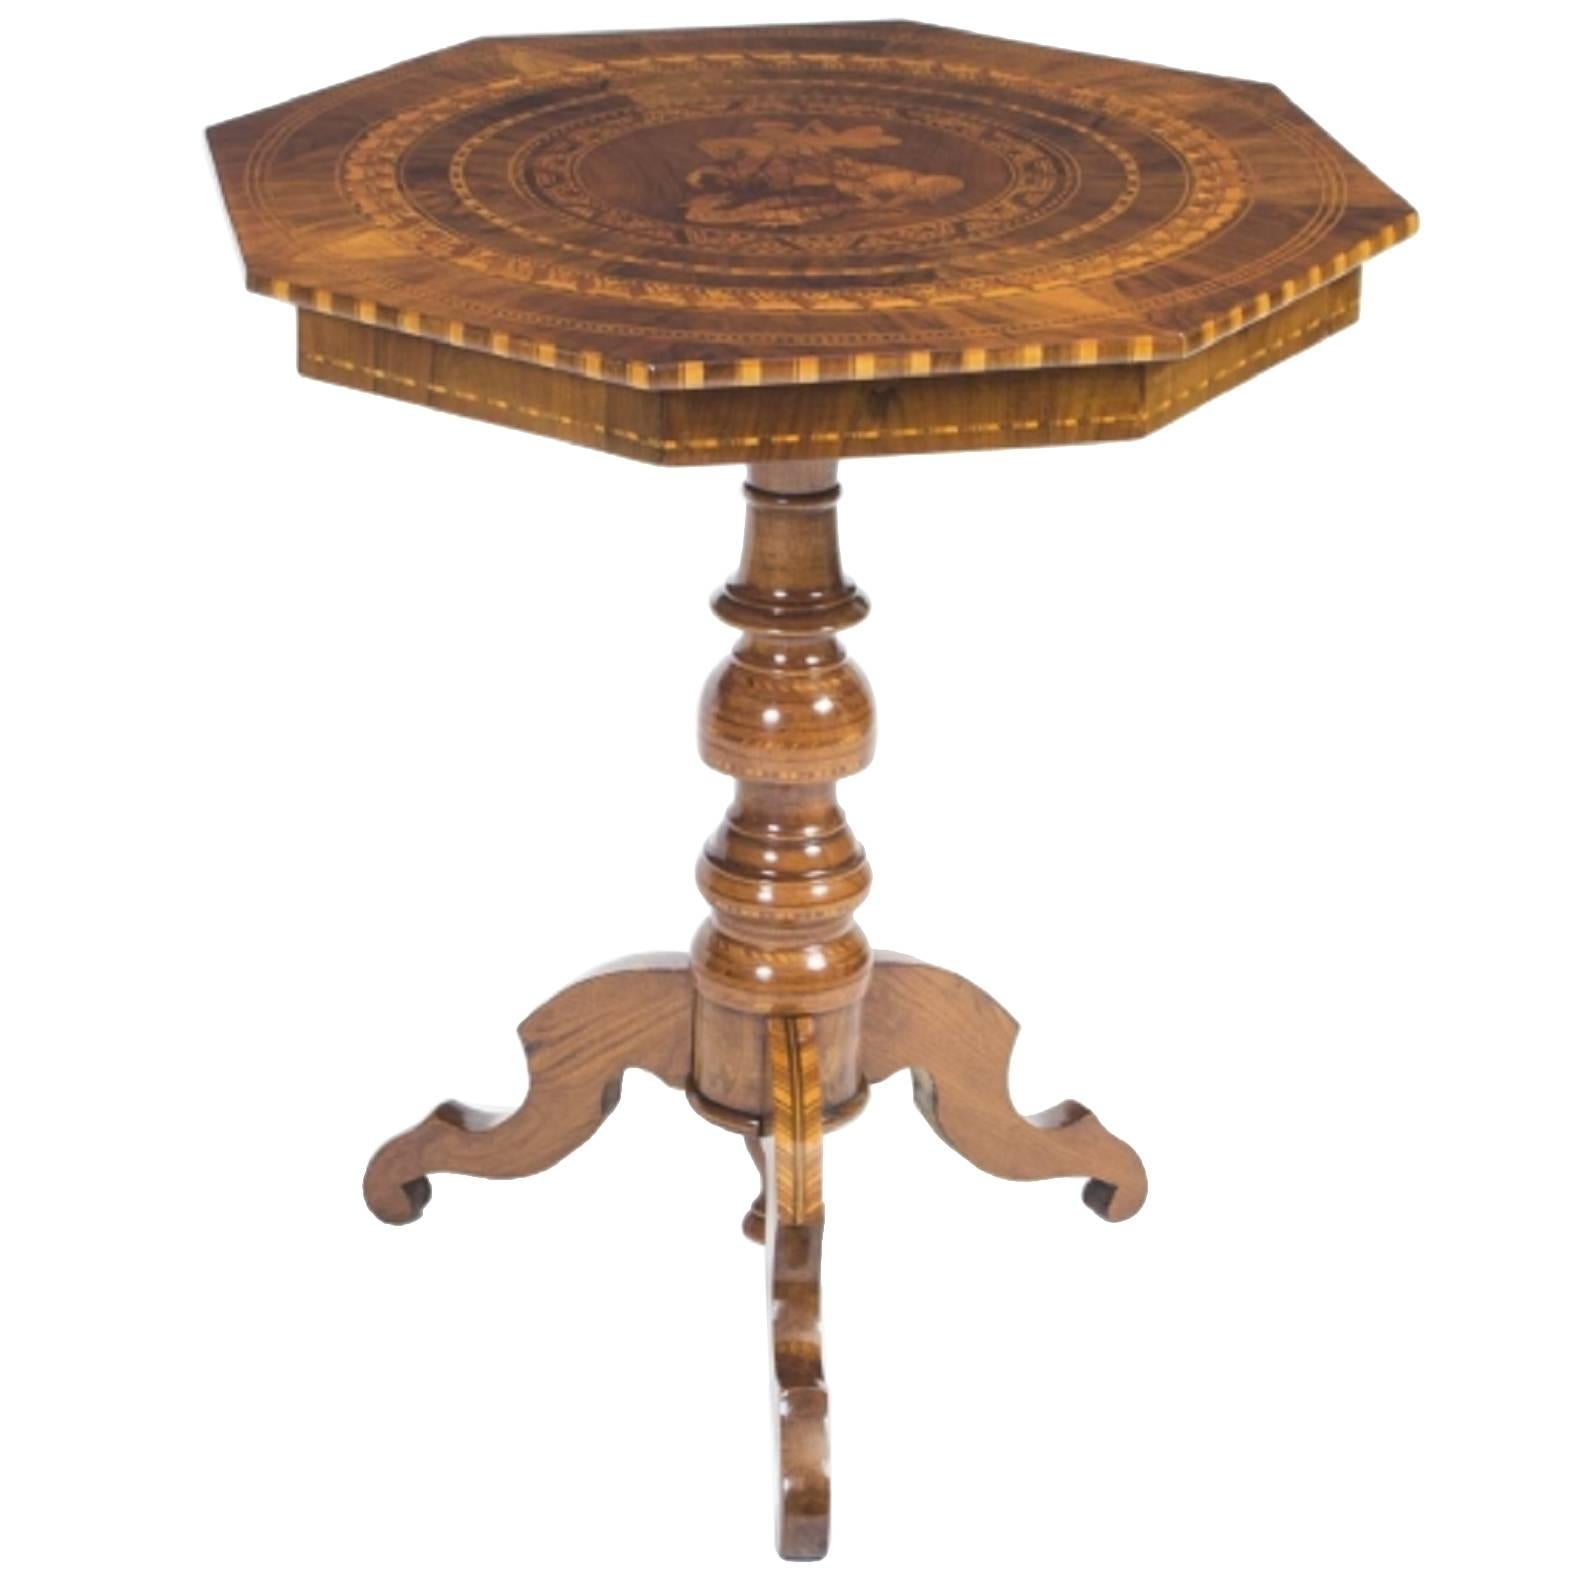 Antique Sorrento Occasional Table, circa 1860